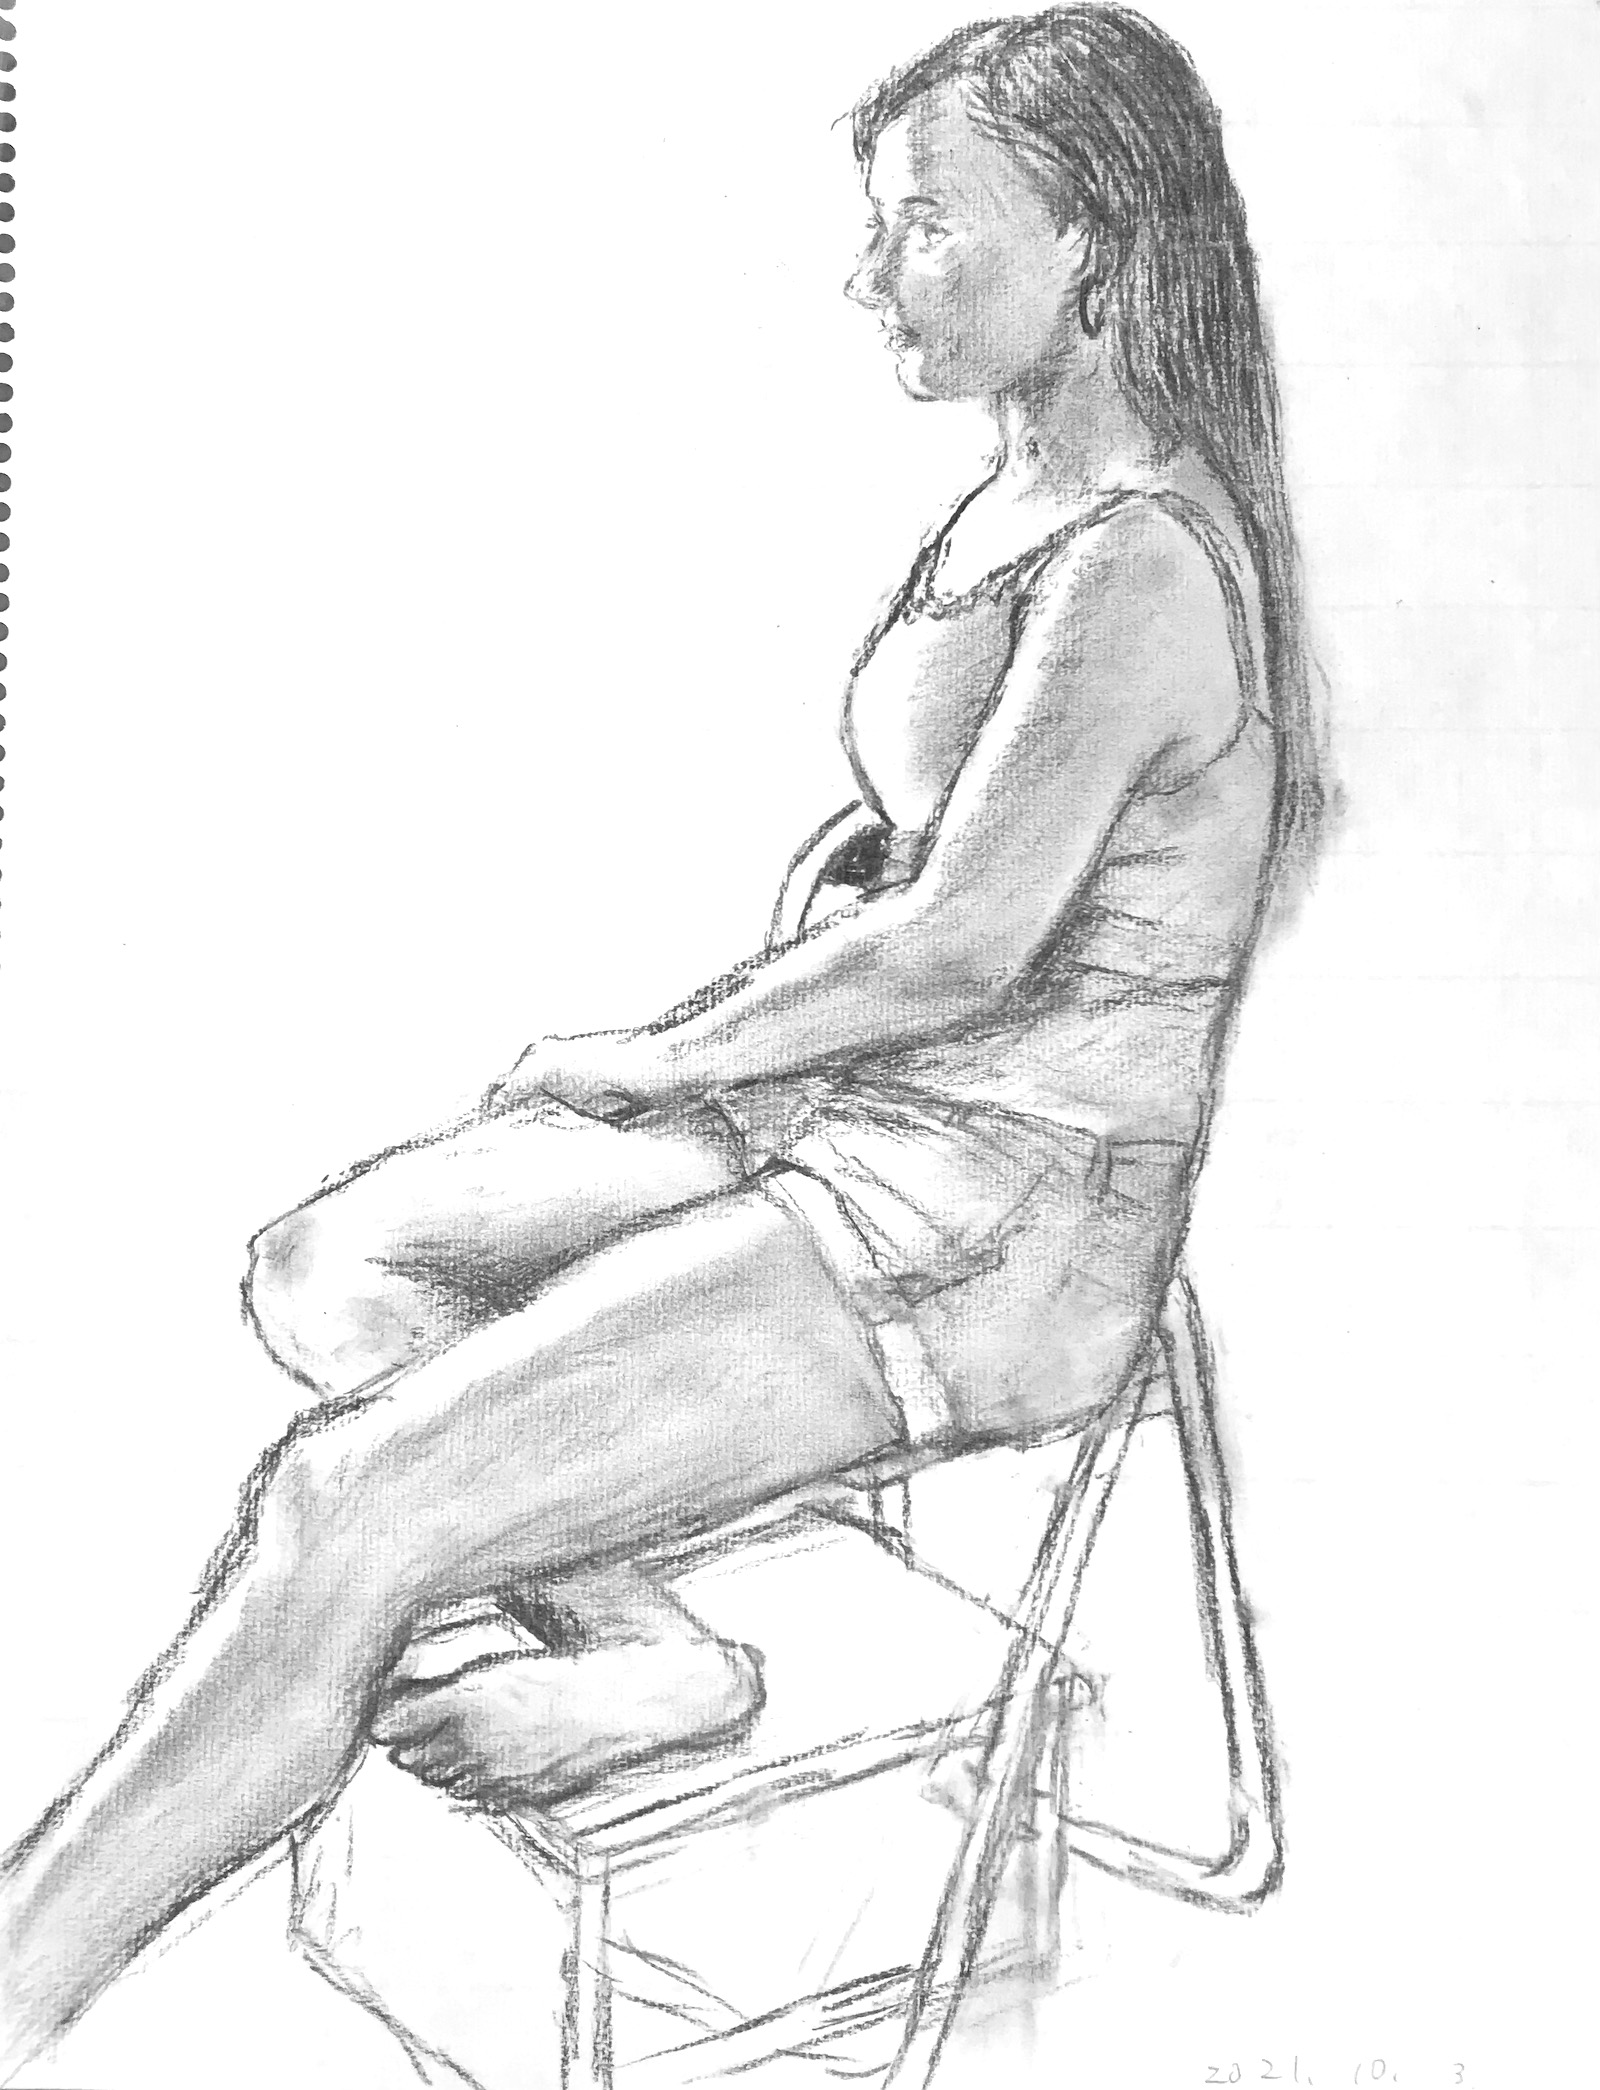 Human drawing